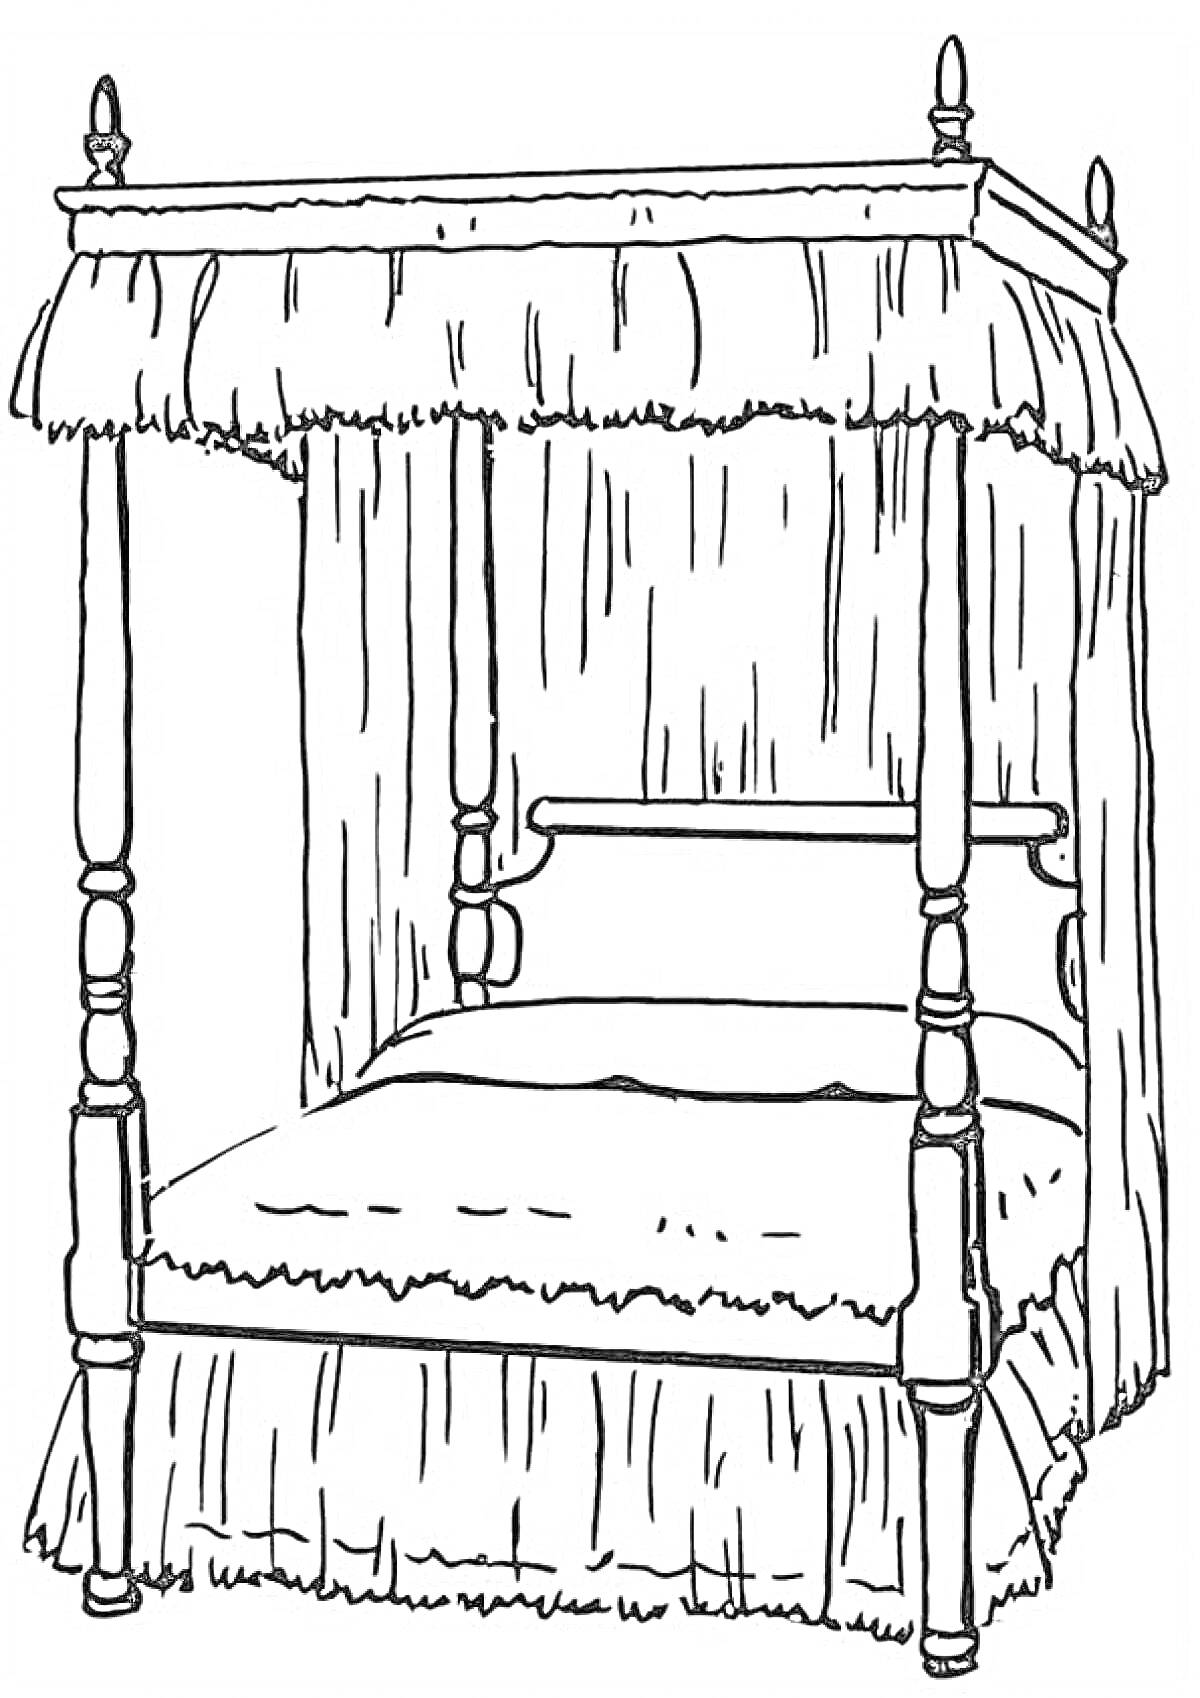 Кровать с балдахином, состоящая из четырех опорных стоек, с занавесками сверху и снизу.